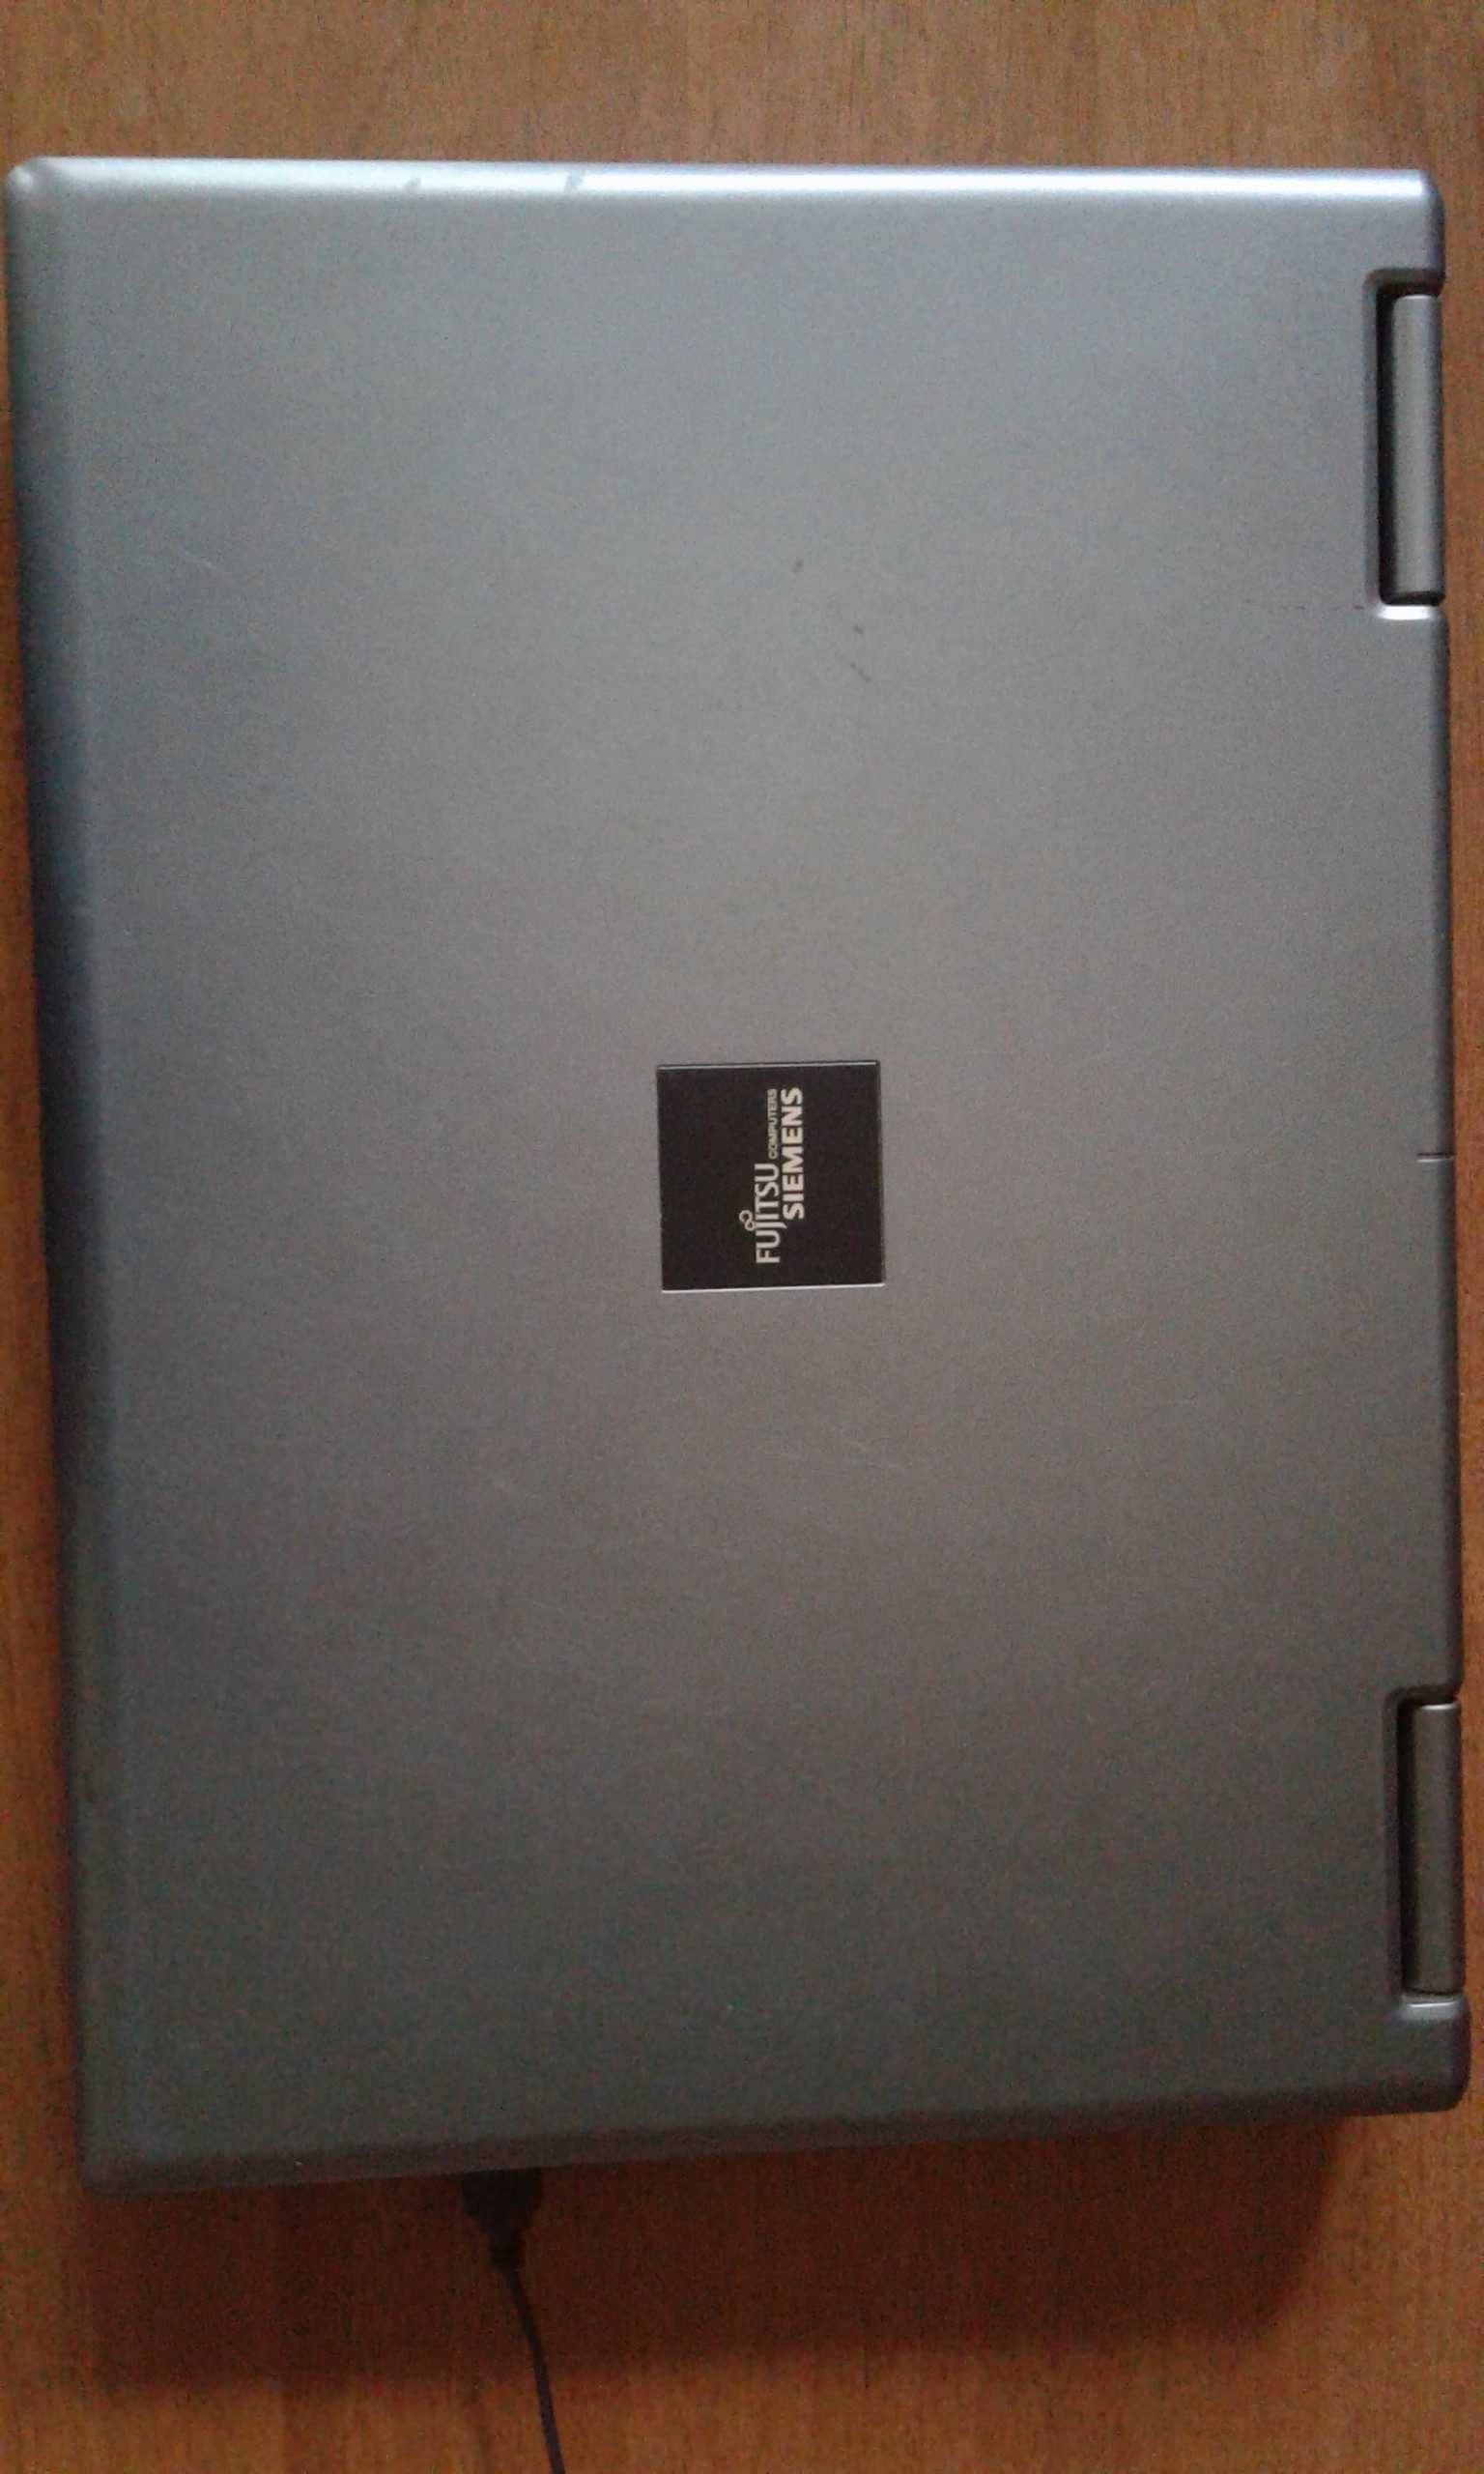 Обмен или продам ноутбук Fujitsu Siemens ESPRIMO Mobile V5515